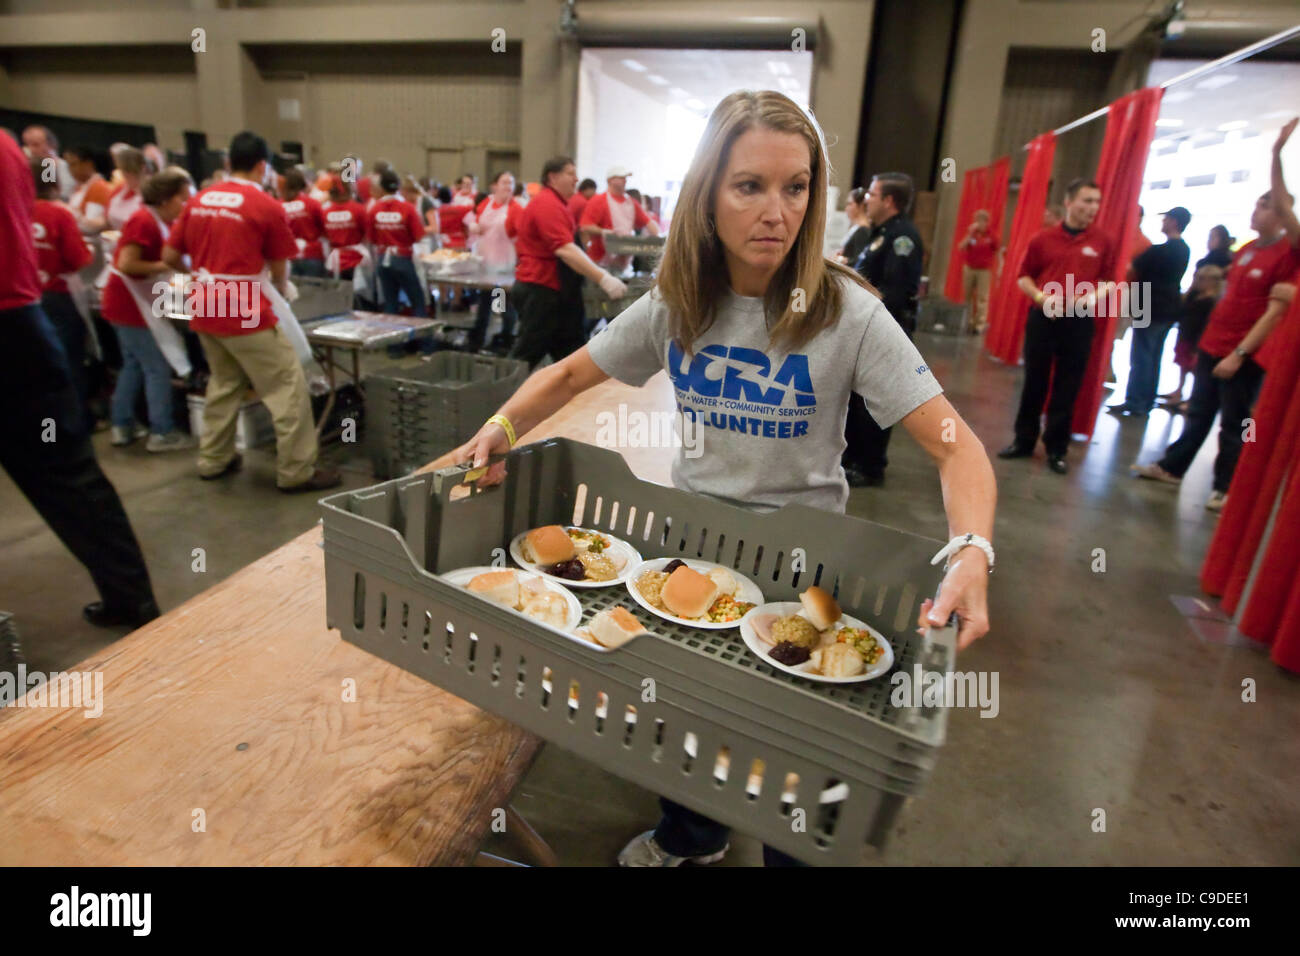 Grupo multiétnico de los voluntarios ayudan a servir las comidas del día de Acción de Gracias cientos de libre donado por la gran cadena de supermercados basada en Texas. Foto de stock